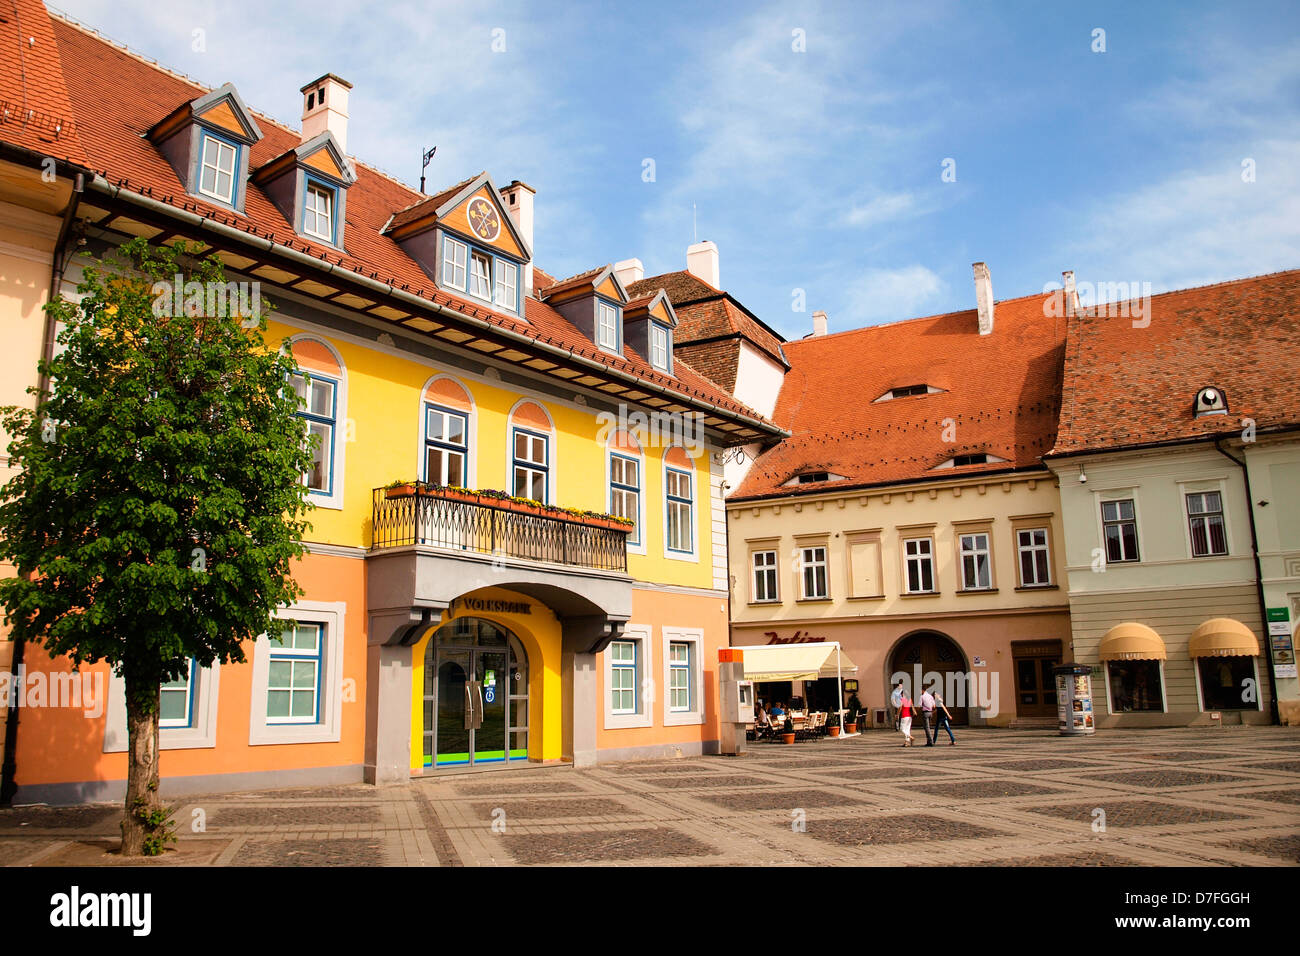 Sibiu, la piazza centrale, il Forum tedesco edificio, con lo stemma della città. Europeo di architettura medievale. Foto Stock